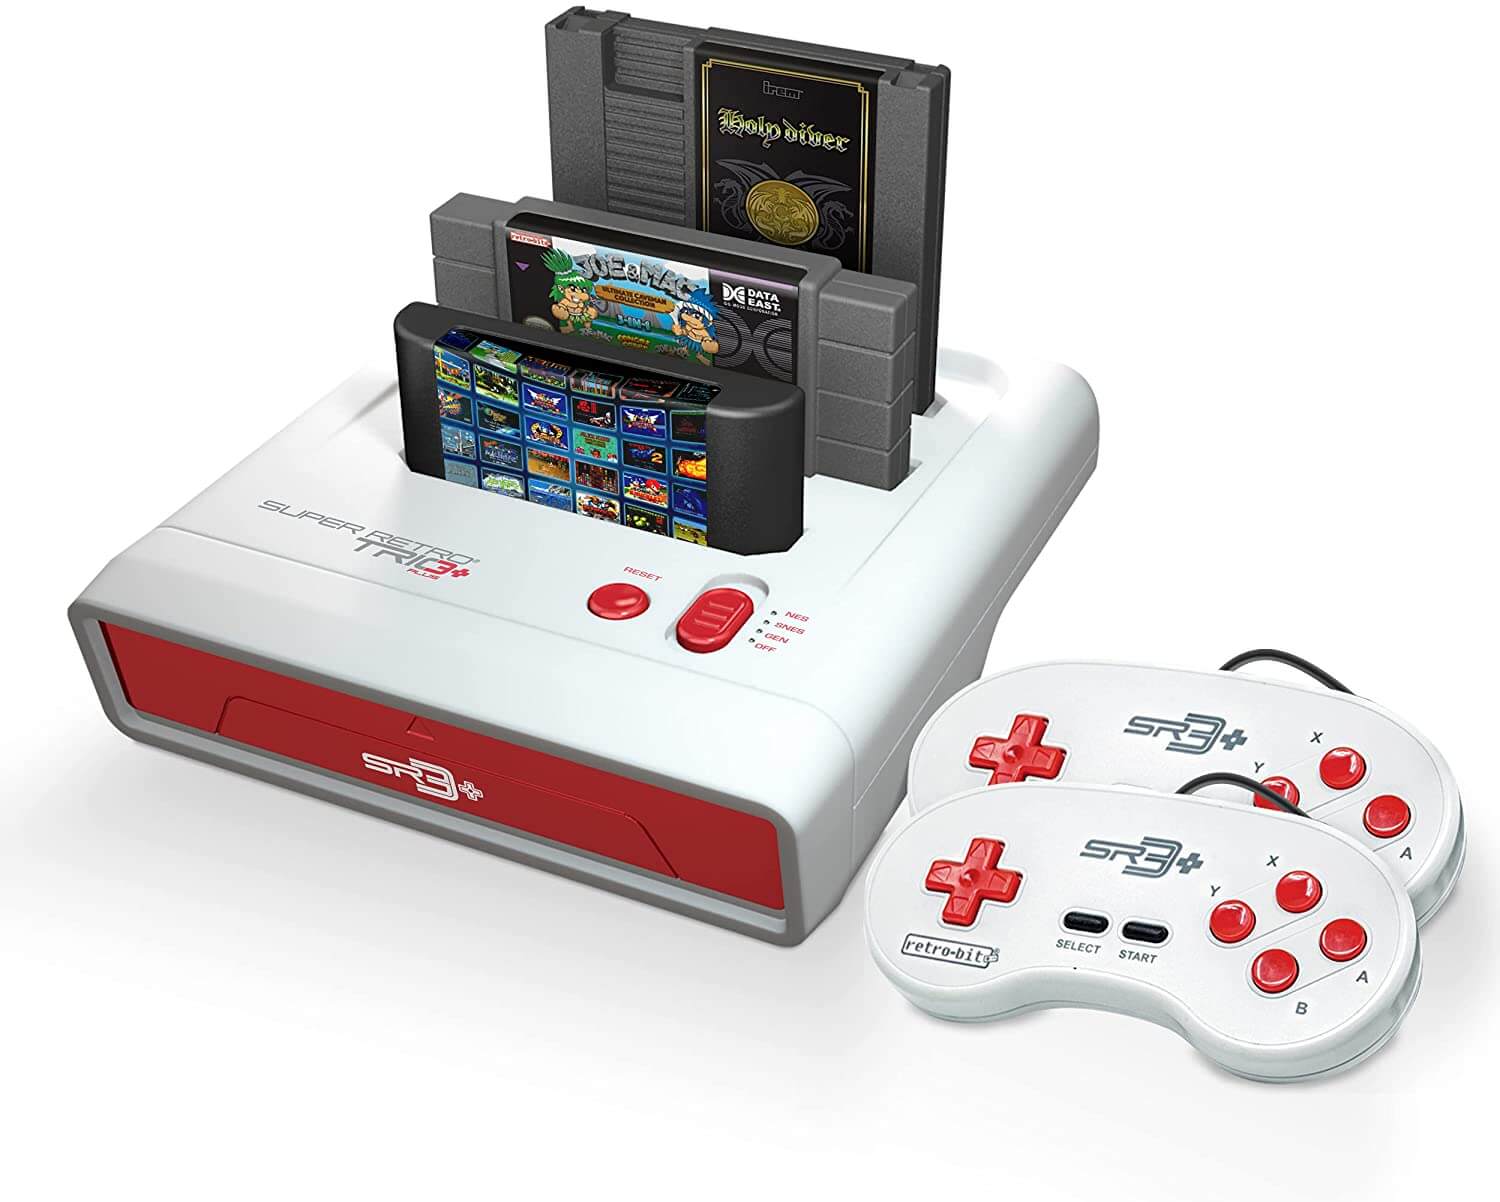  Retro-Bit Super Retro TRIO HD Plus 720P 3 in 1 Console System (2018) - for NES, SNES, and Sega Genesis Original Game Cartridges - Red/White